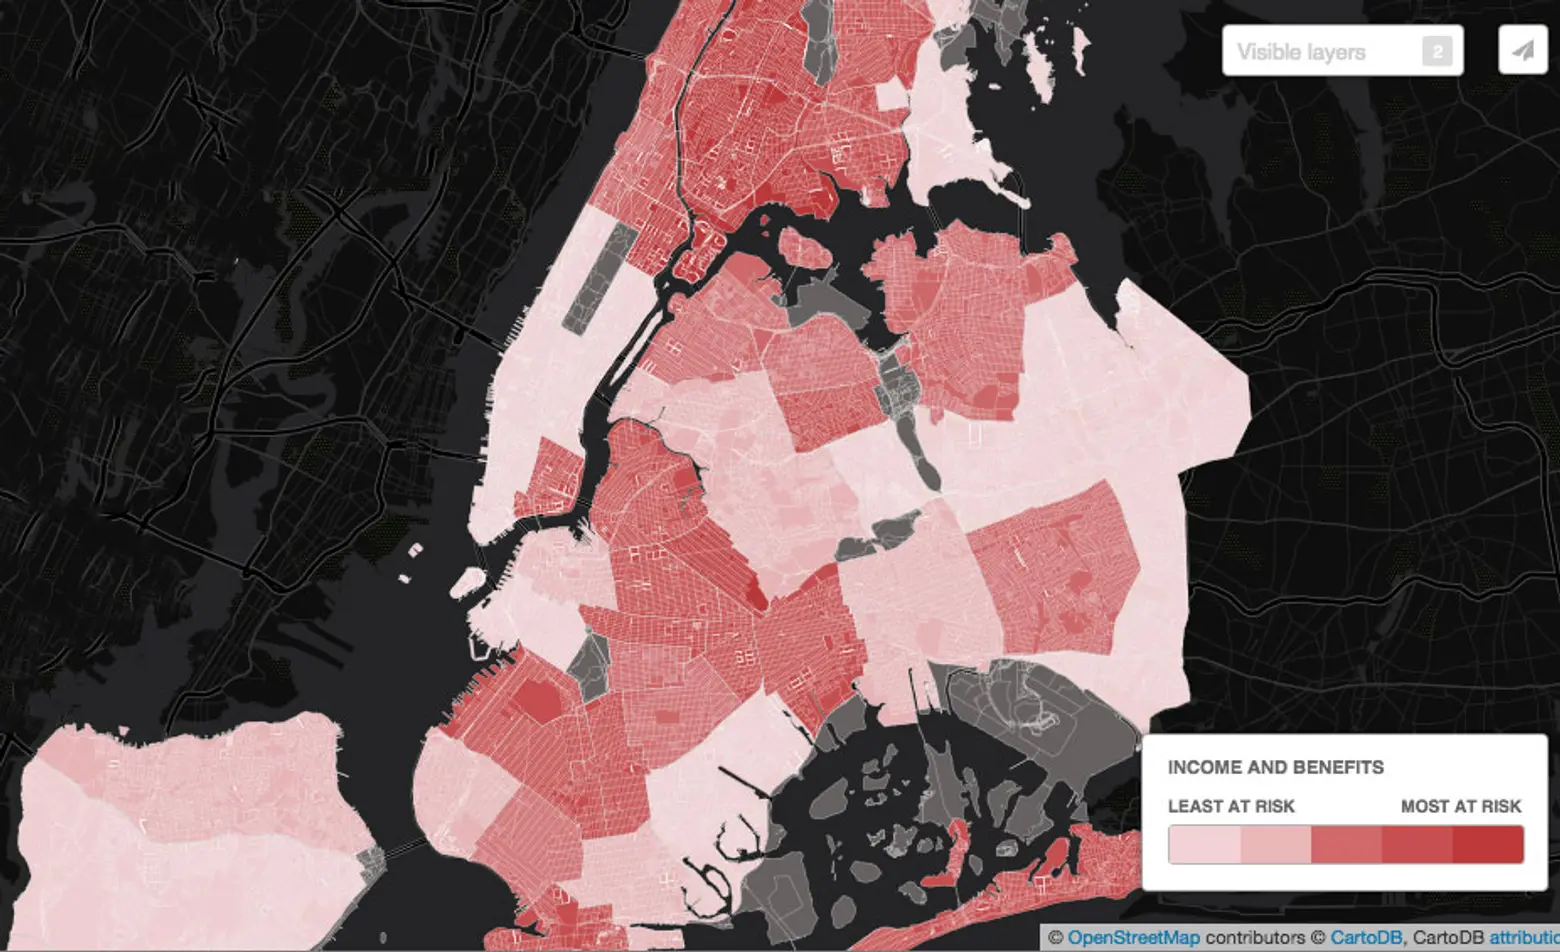 NYC-neighborhood-economy-map-income-and-benefits